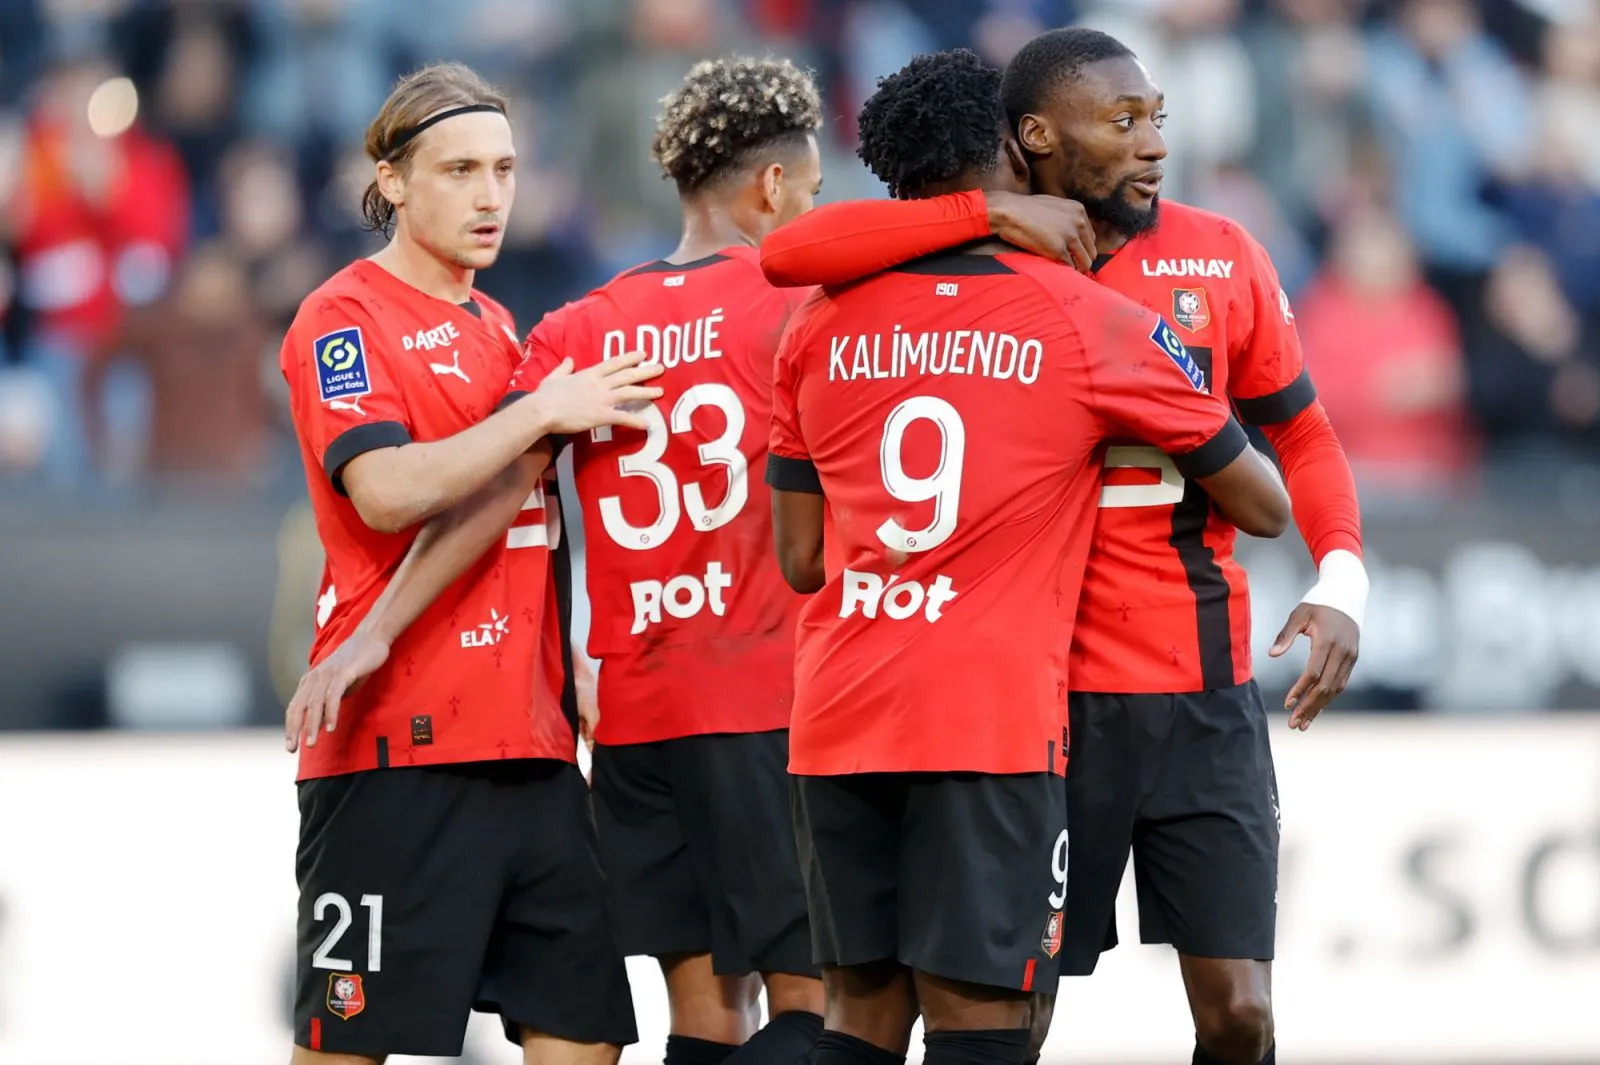 Pronostic Rennes Shakhtar Donetsk : Analyse, cotes et prono du match de Ligue Europa